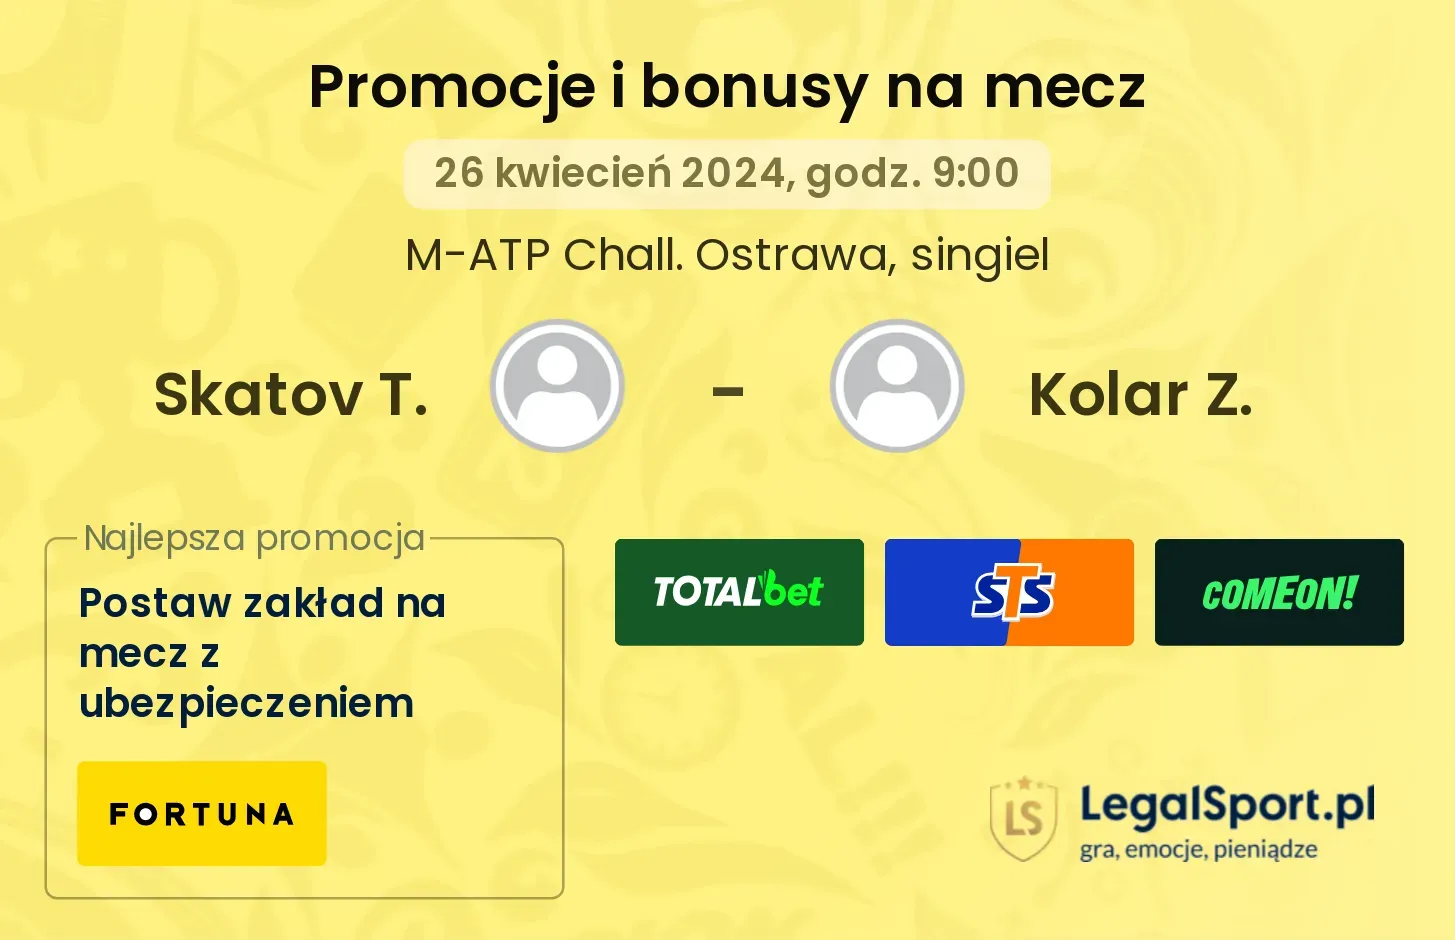 Skatov T. - Kolar Z. promocje bonusy na mecz